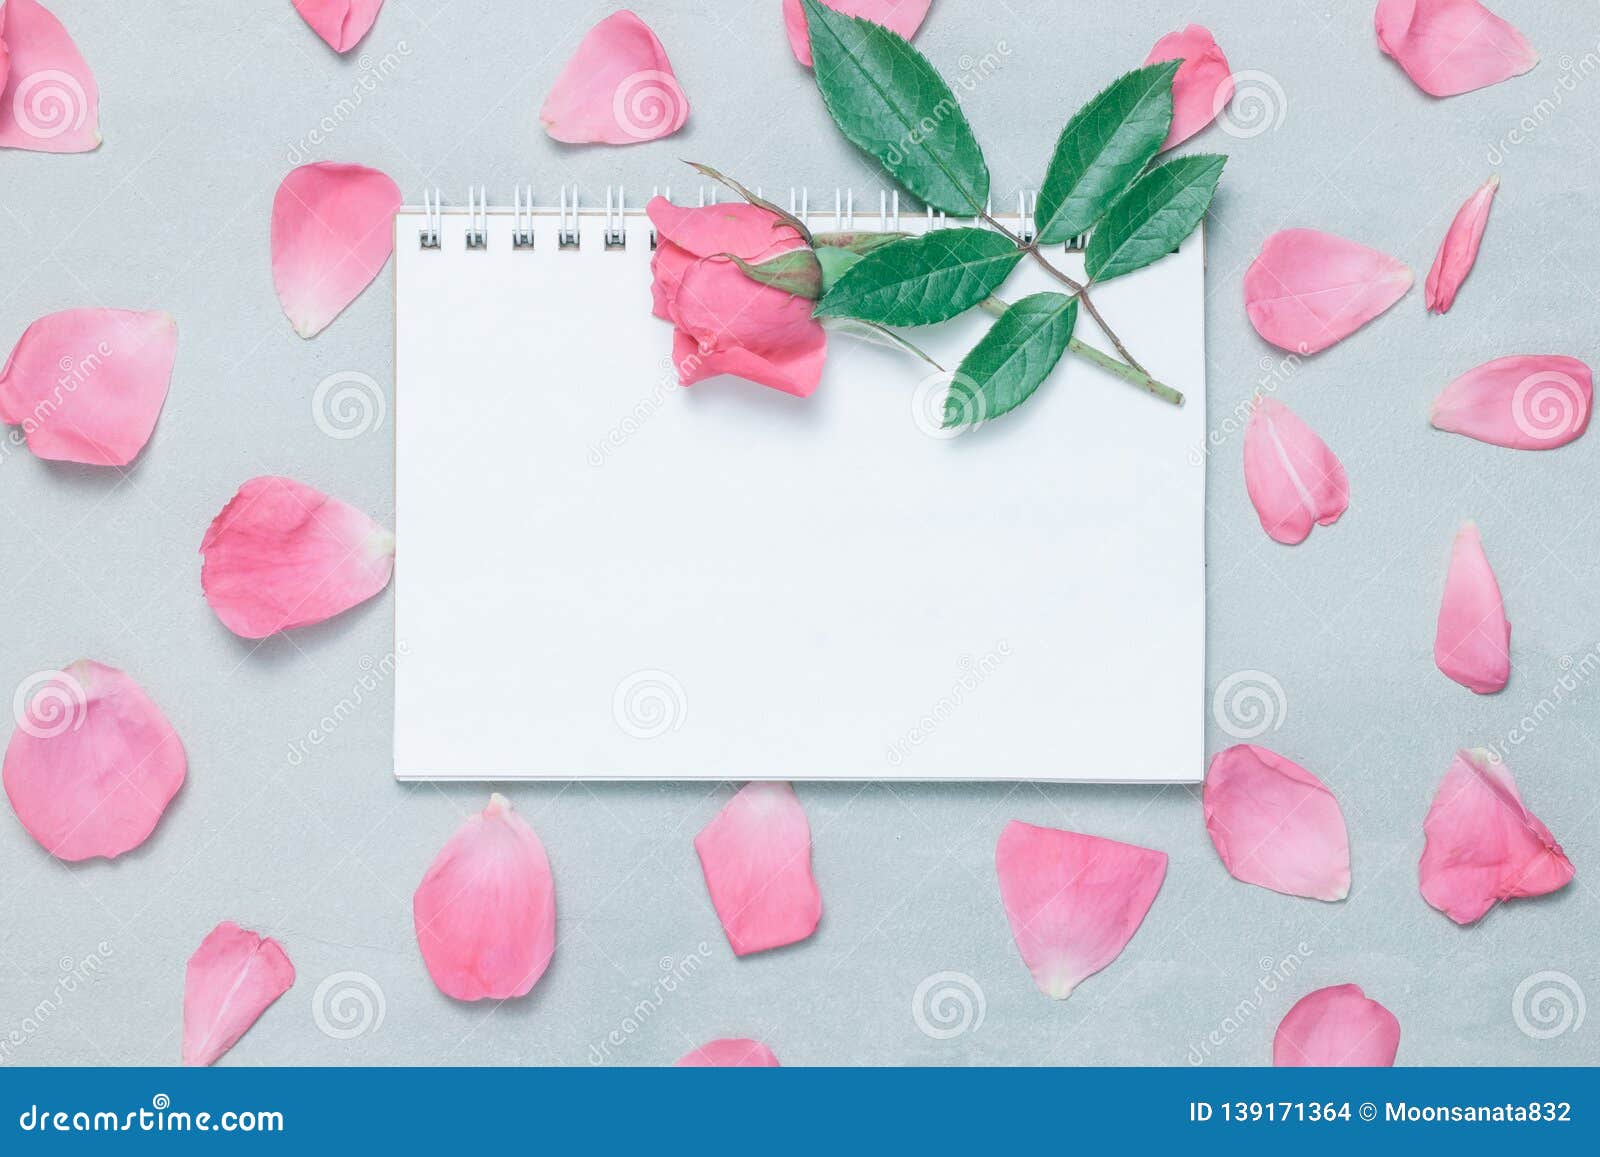 【白玫瑰PNG】精選27款白玫瑰PNG點陣圖素材包下載，免費的白玫瑰去背圖片 - 天天瘋後製